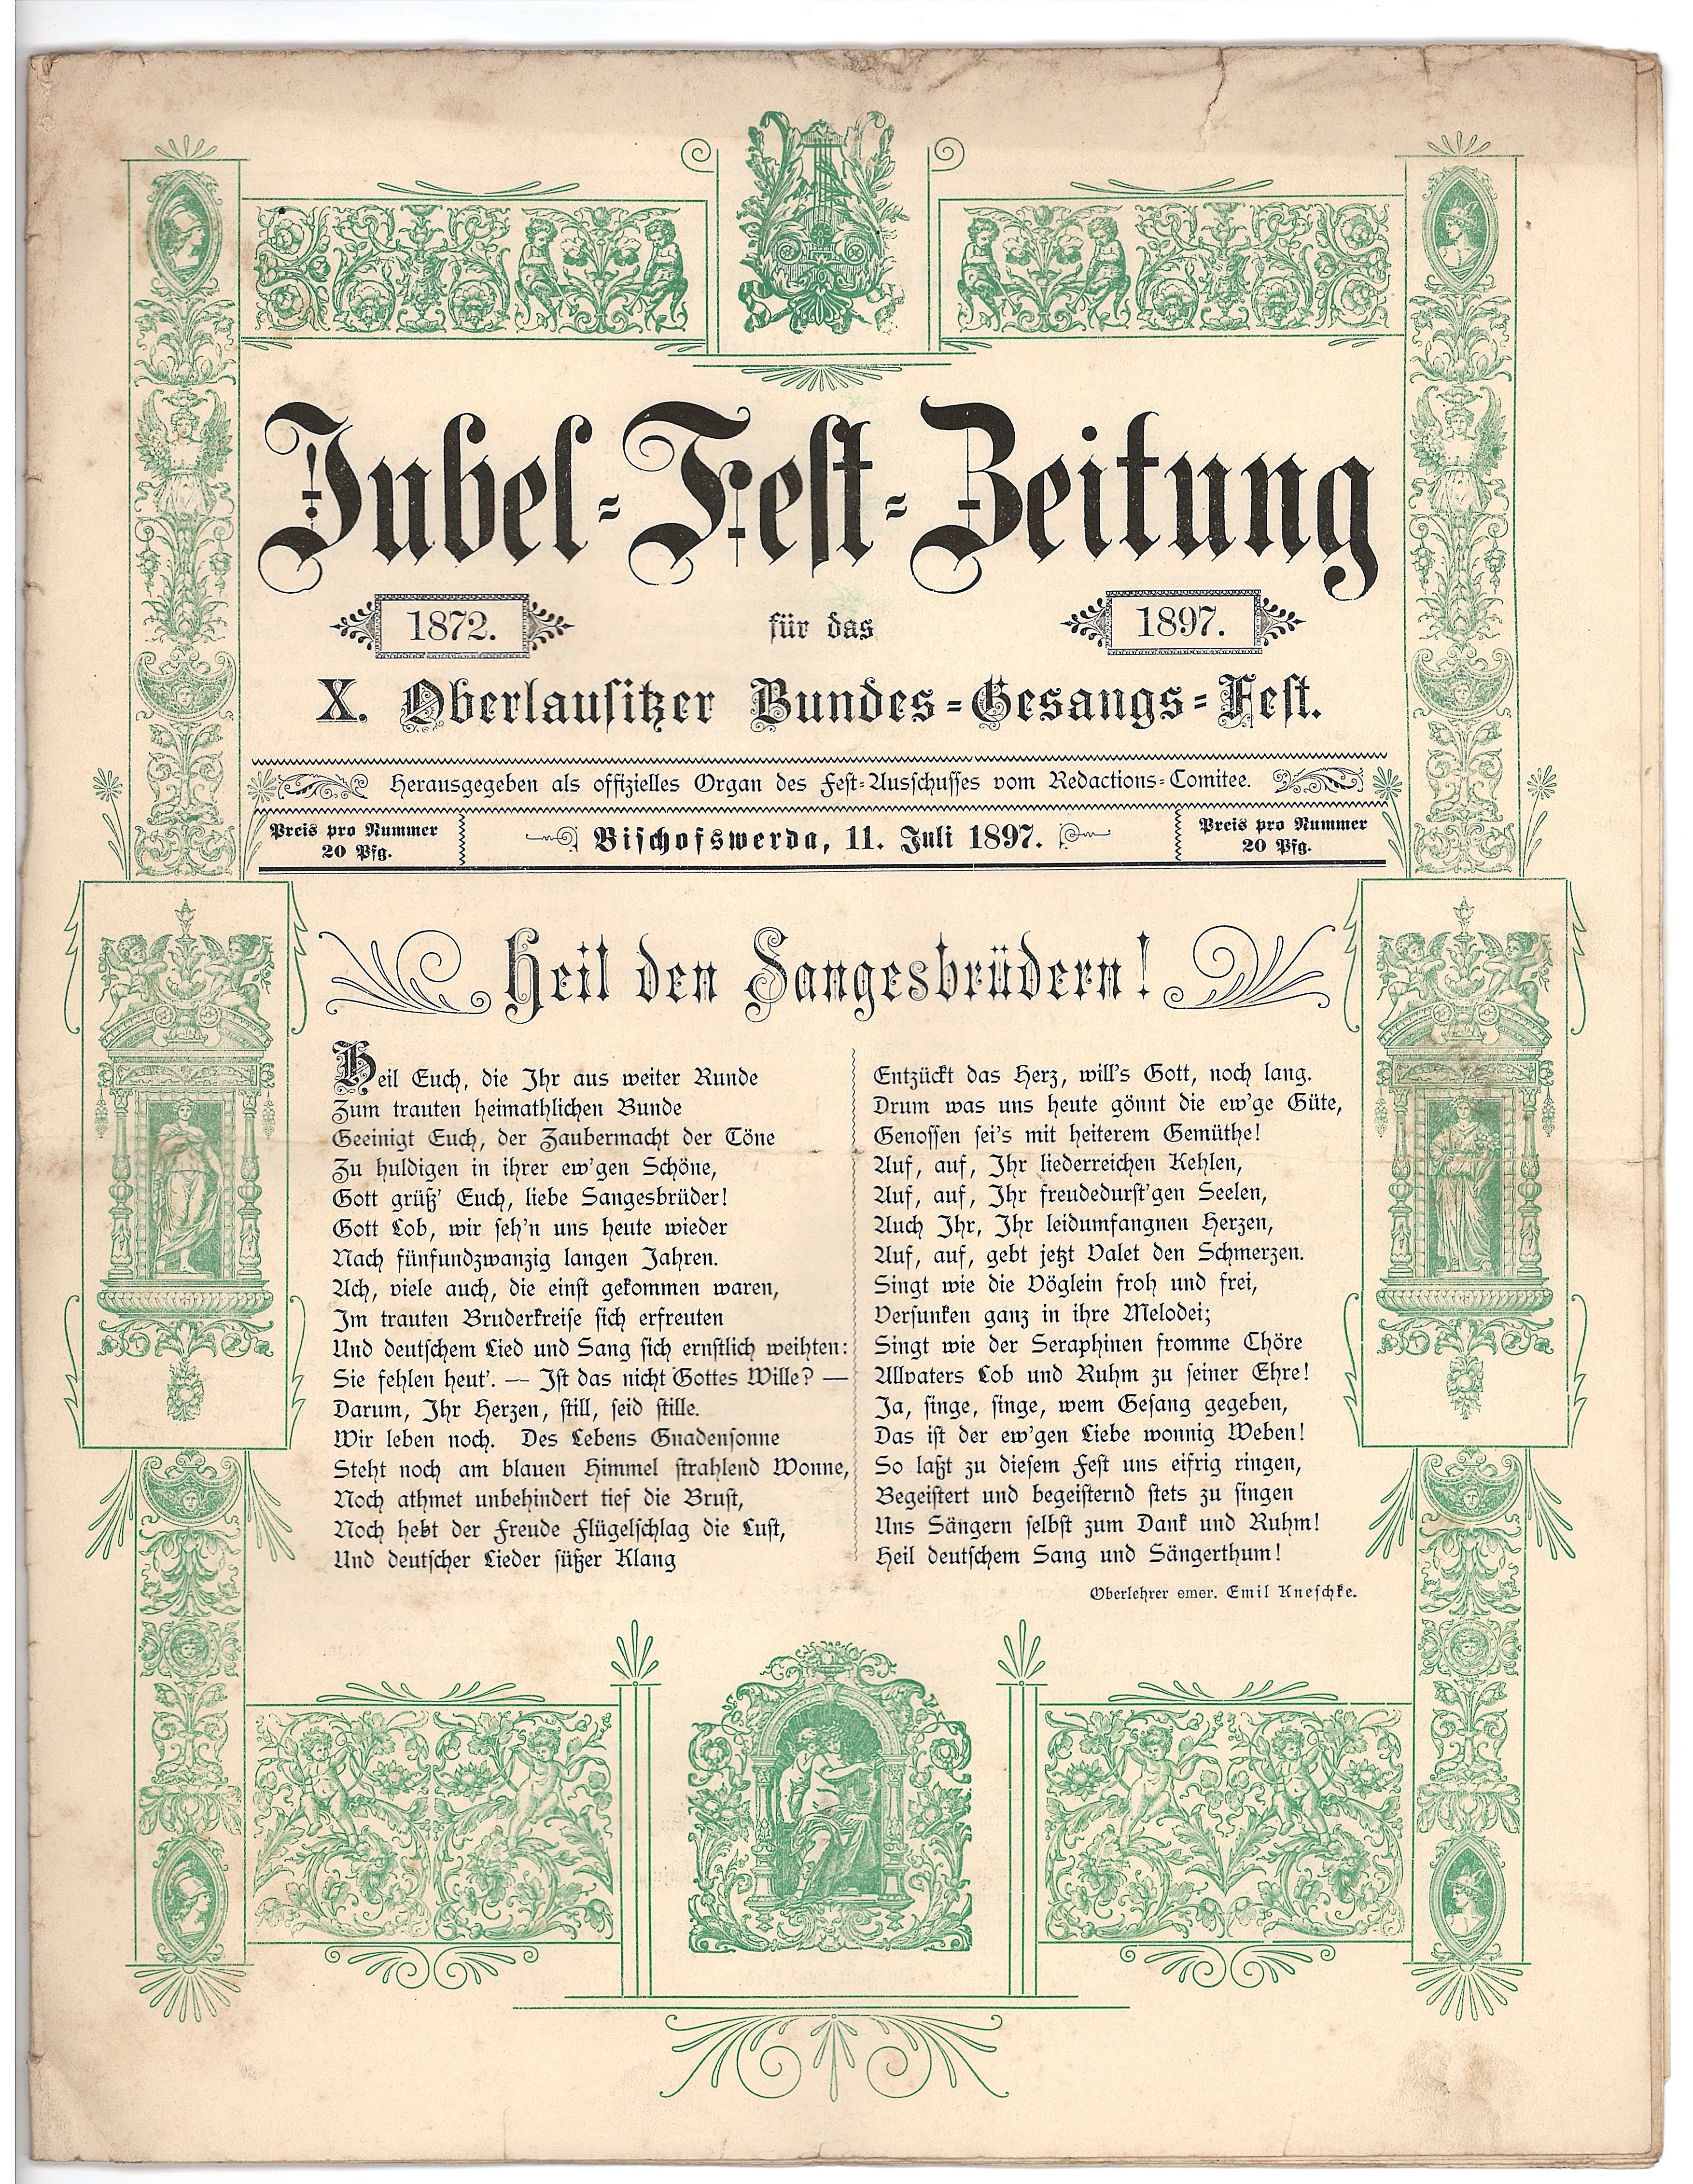 Jubel-Fest-Zeitung zum Bundes-Gesangs-Fest (Deutsches Damast- und Frottiermuseum CC BY-NC-SA)